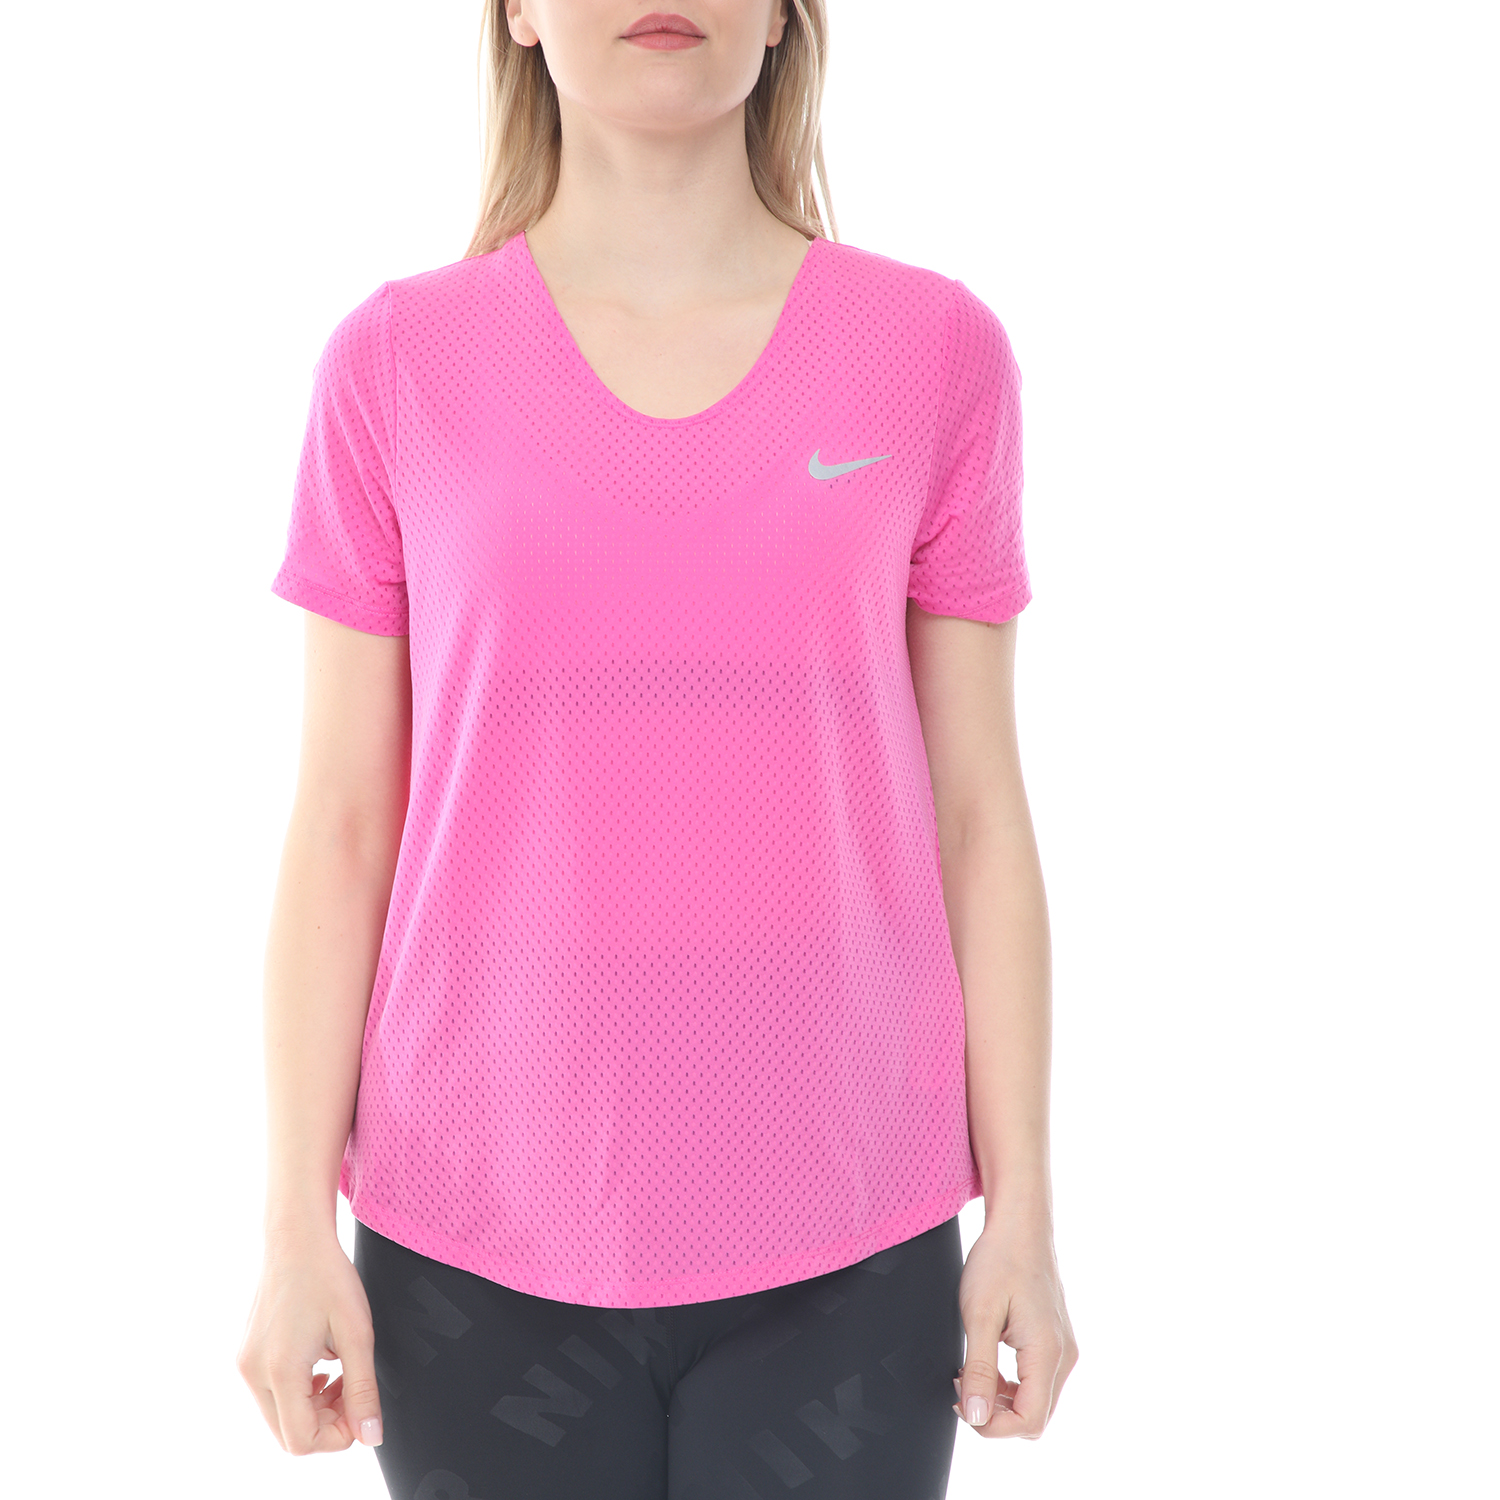 Γυναικεία/Ρούχα/Αθλητικά/T-shirt-Τοπ NIKE - Γυναικεία μπούζα NIKE TOP SS BREATHE ροζ